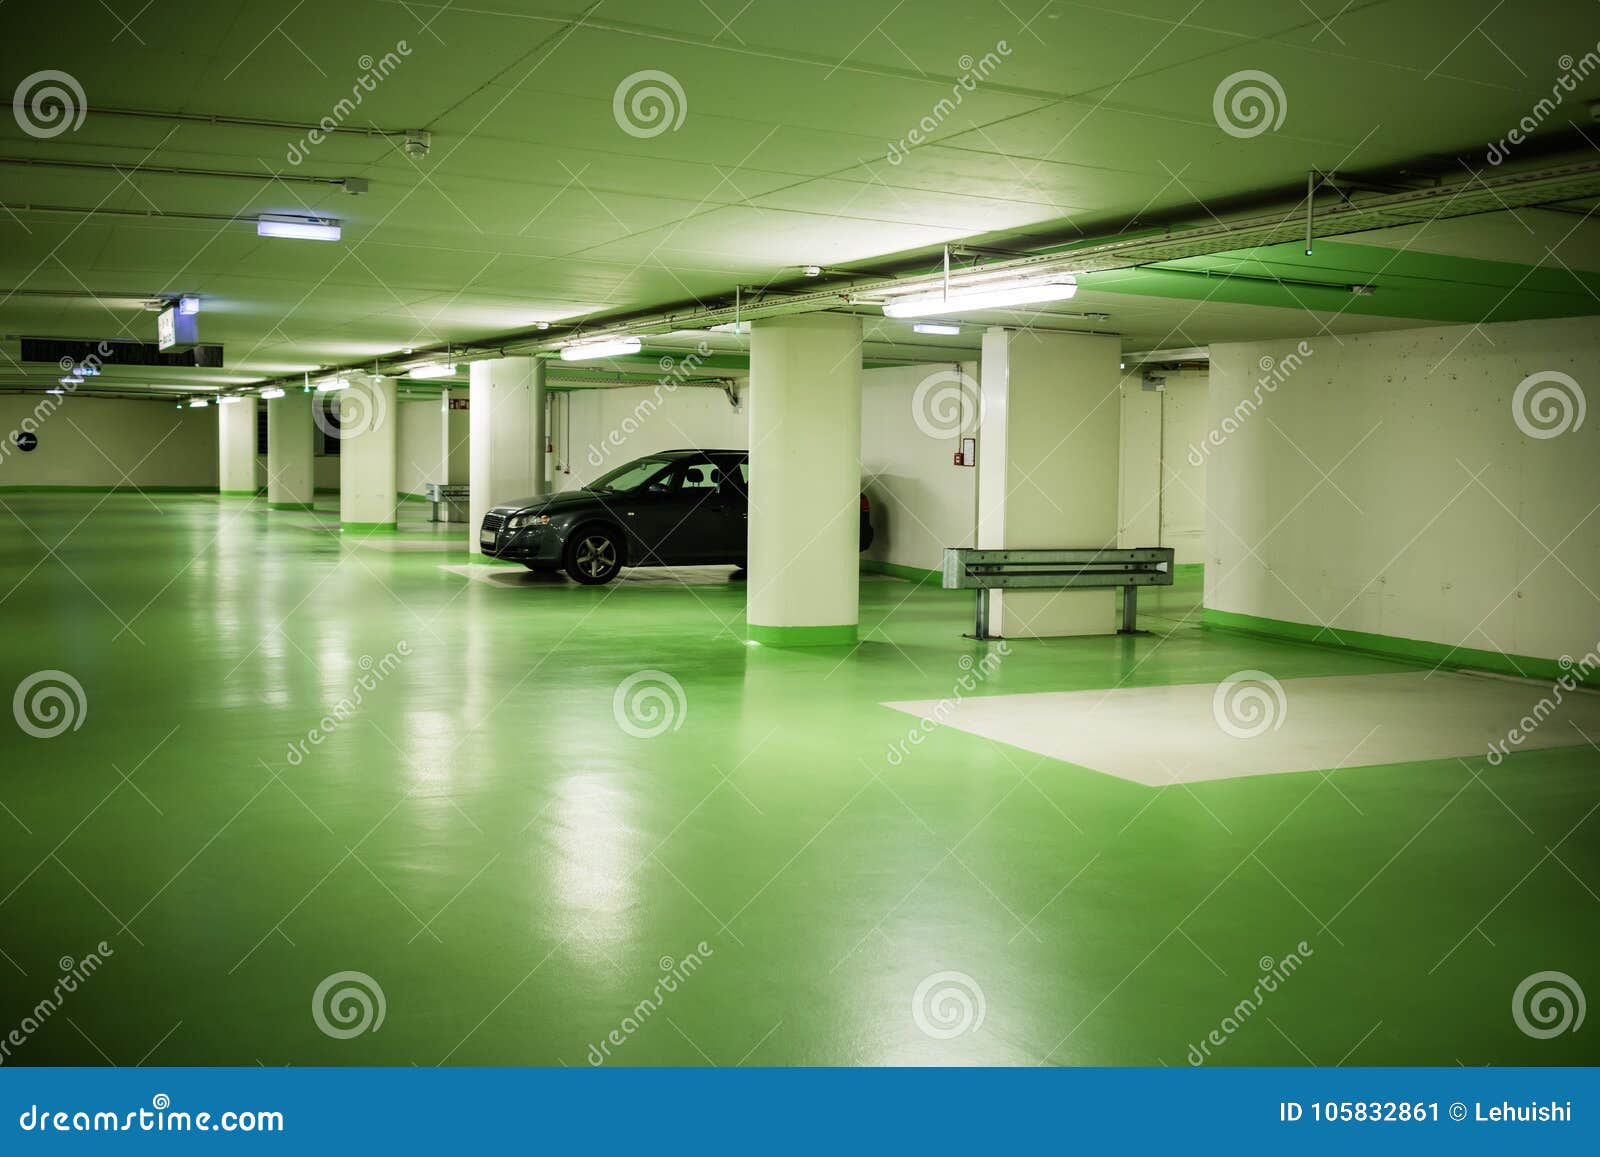 parking garage in underground interior